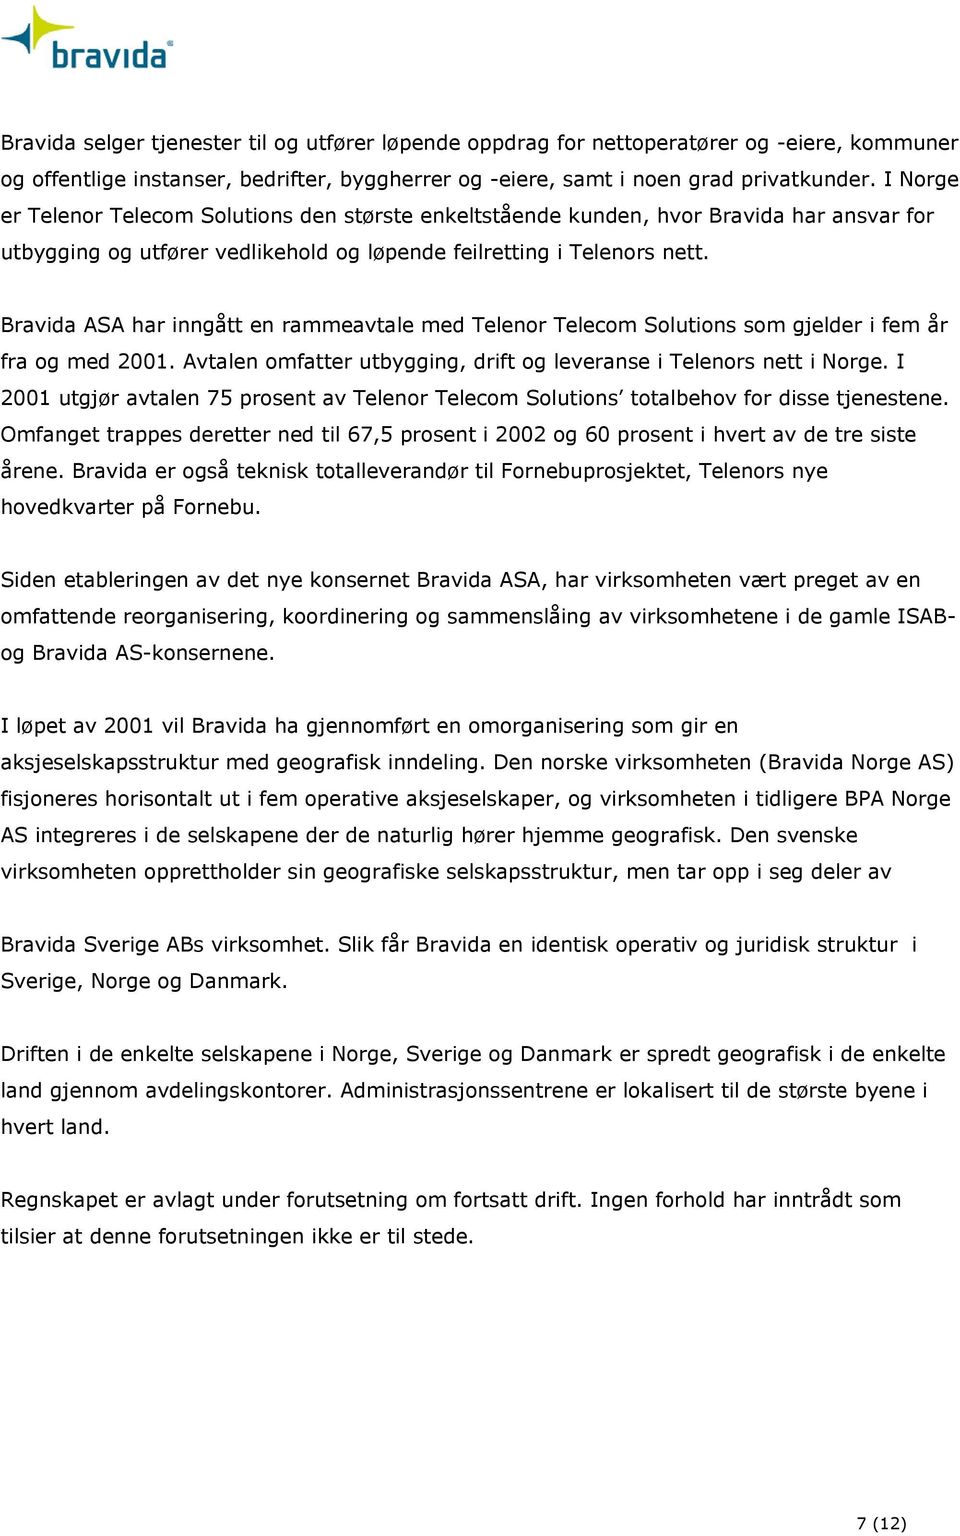 Bravida ASA har inngått en rammeavtale med Telenor Telecom Solutions som gjelder i fem år fra og med 2001. Avtalen omfatter utbygging, drift og leveranse i Telenors nett i Norge.